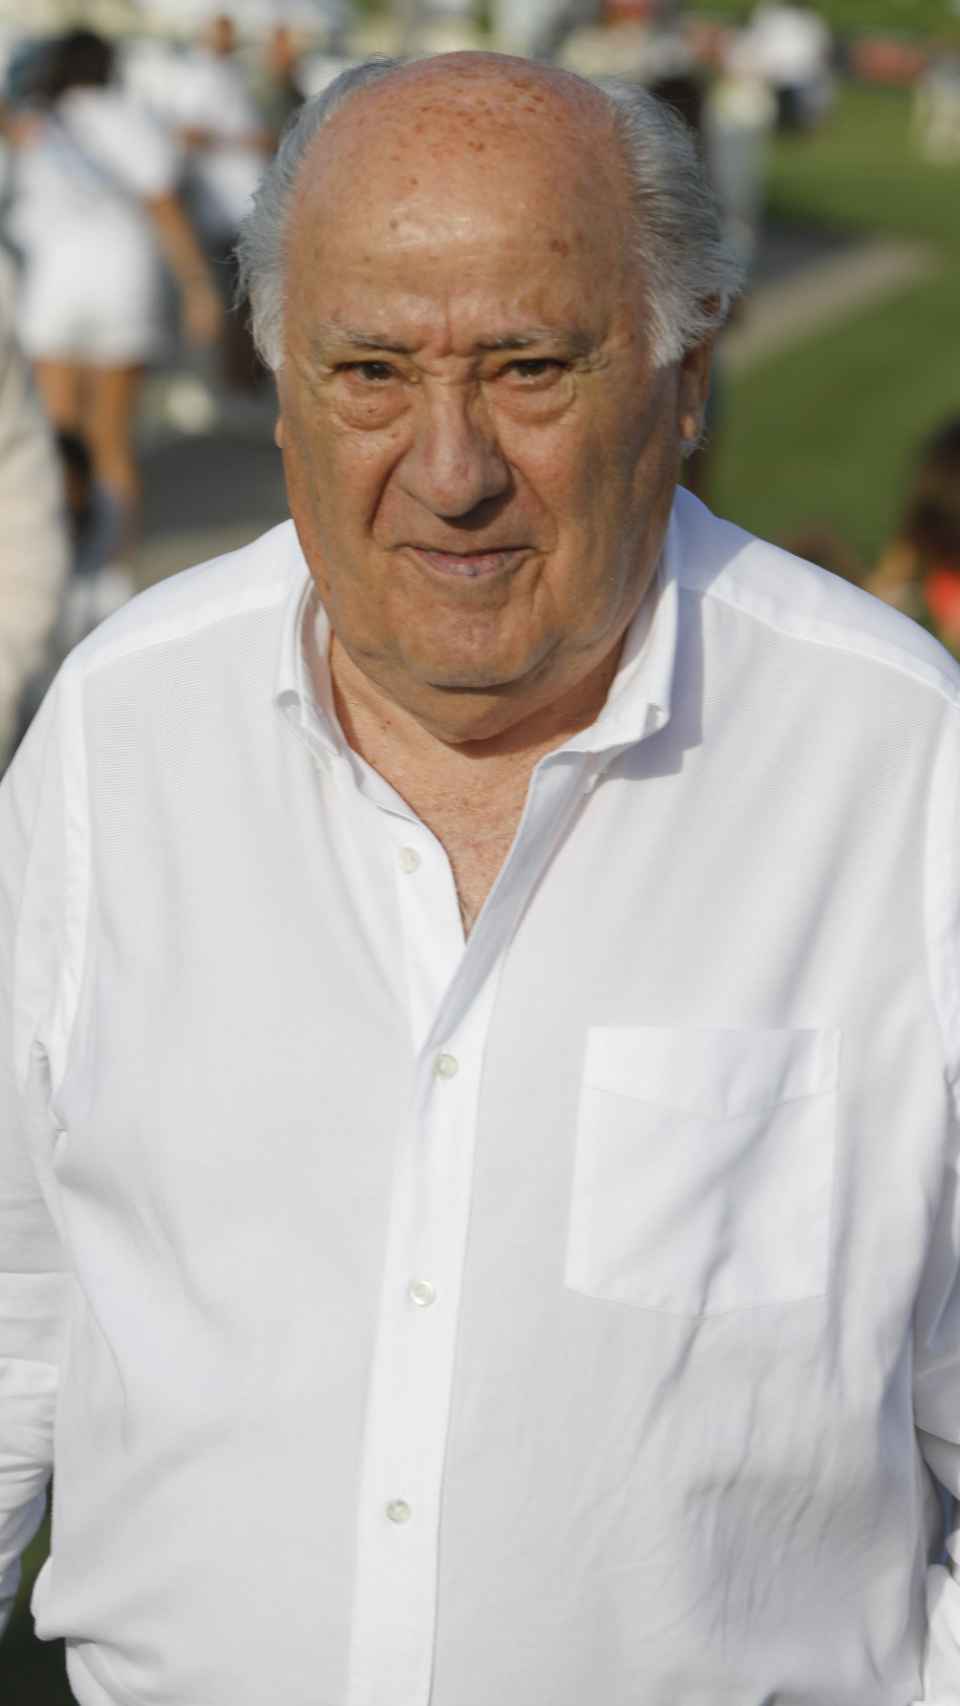 El empresario y fundador de Inditex, Amancio Ortega. Gtres.